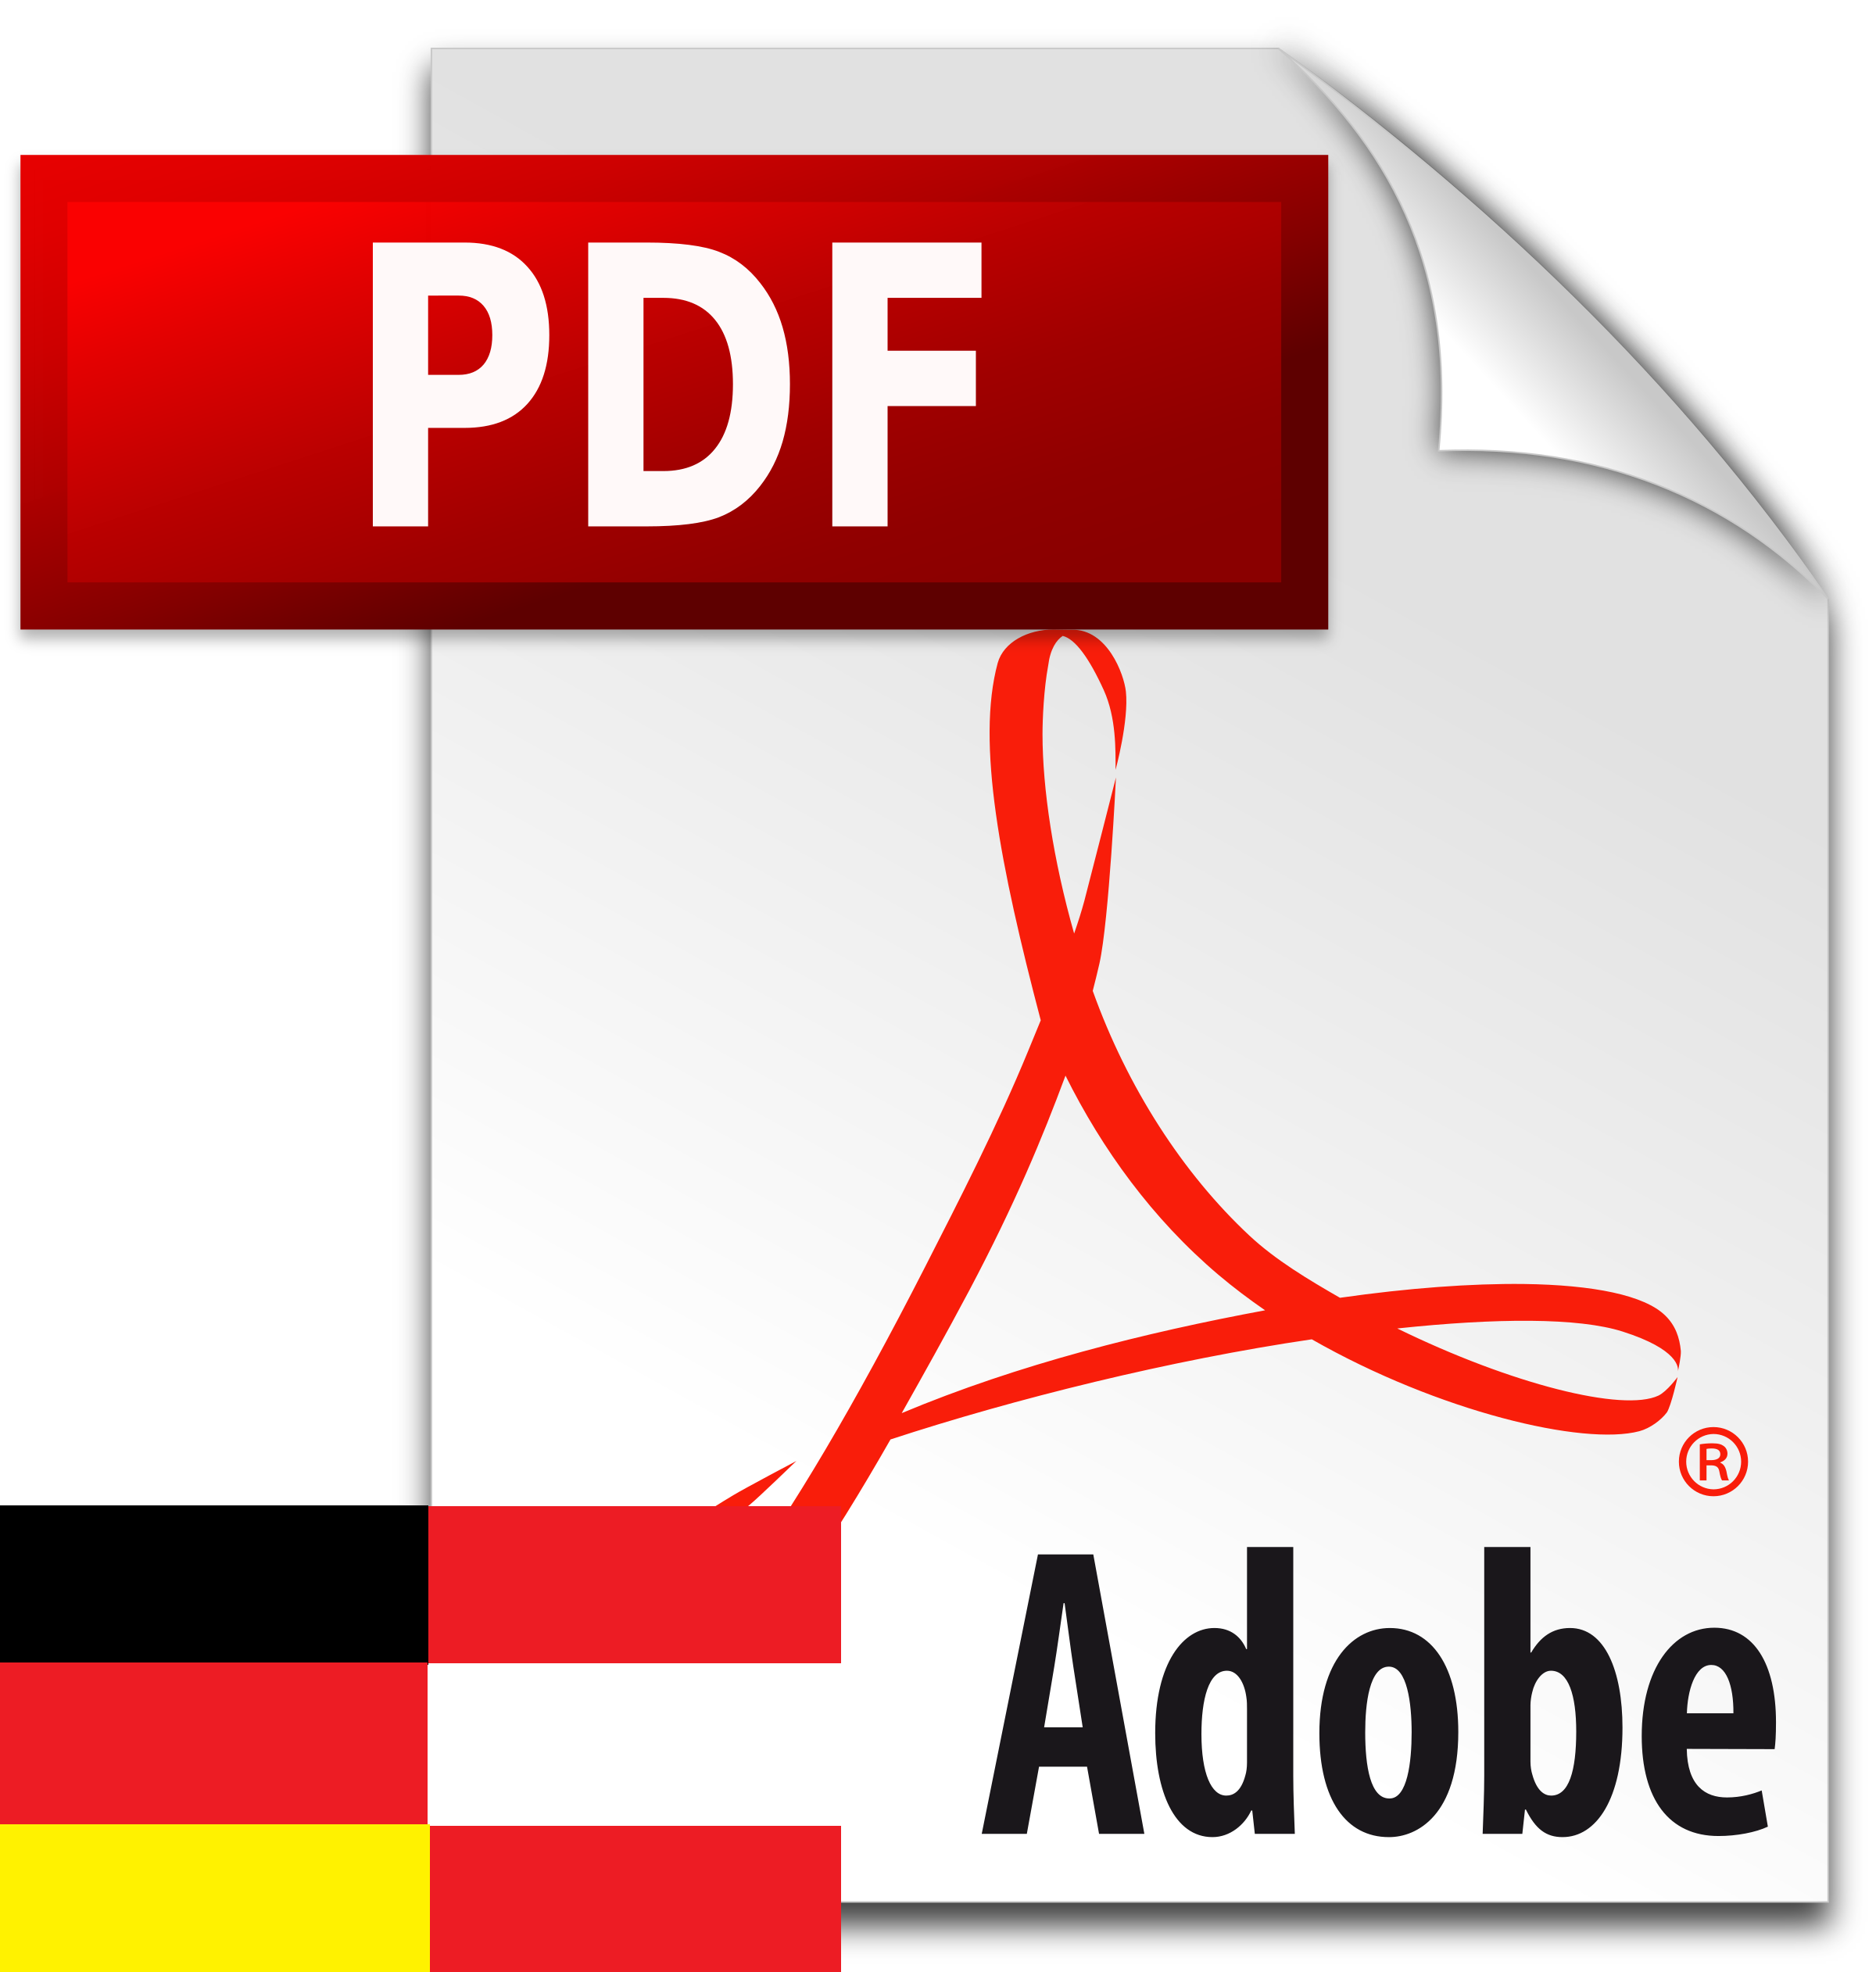 PDF in German